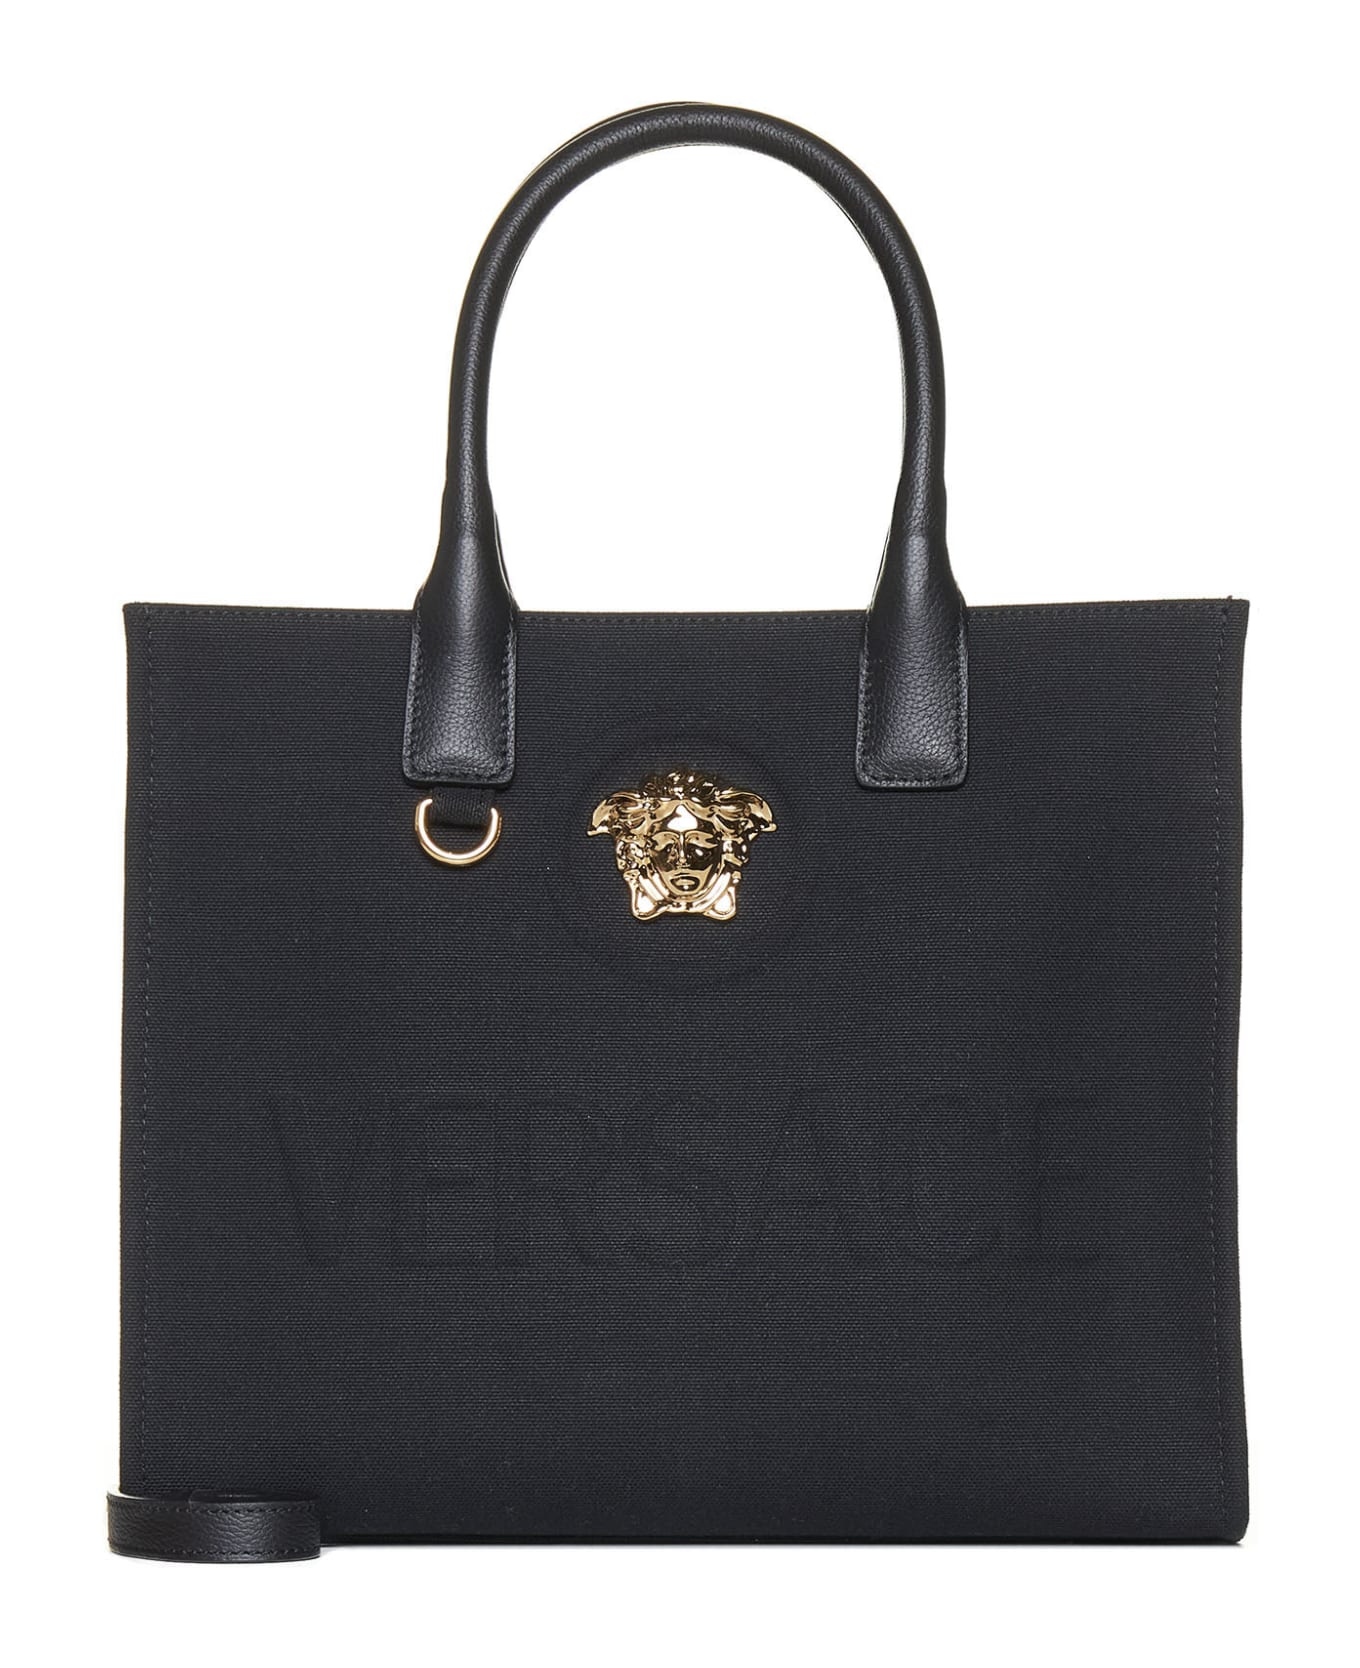 Versace La Medusa Tote Bag - Nero+oro Versace トートバッグ